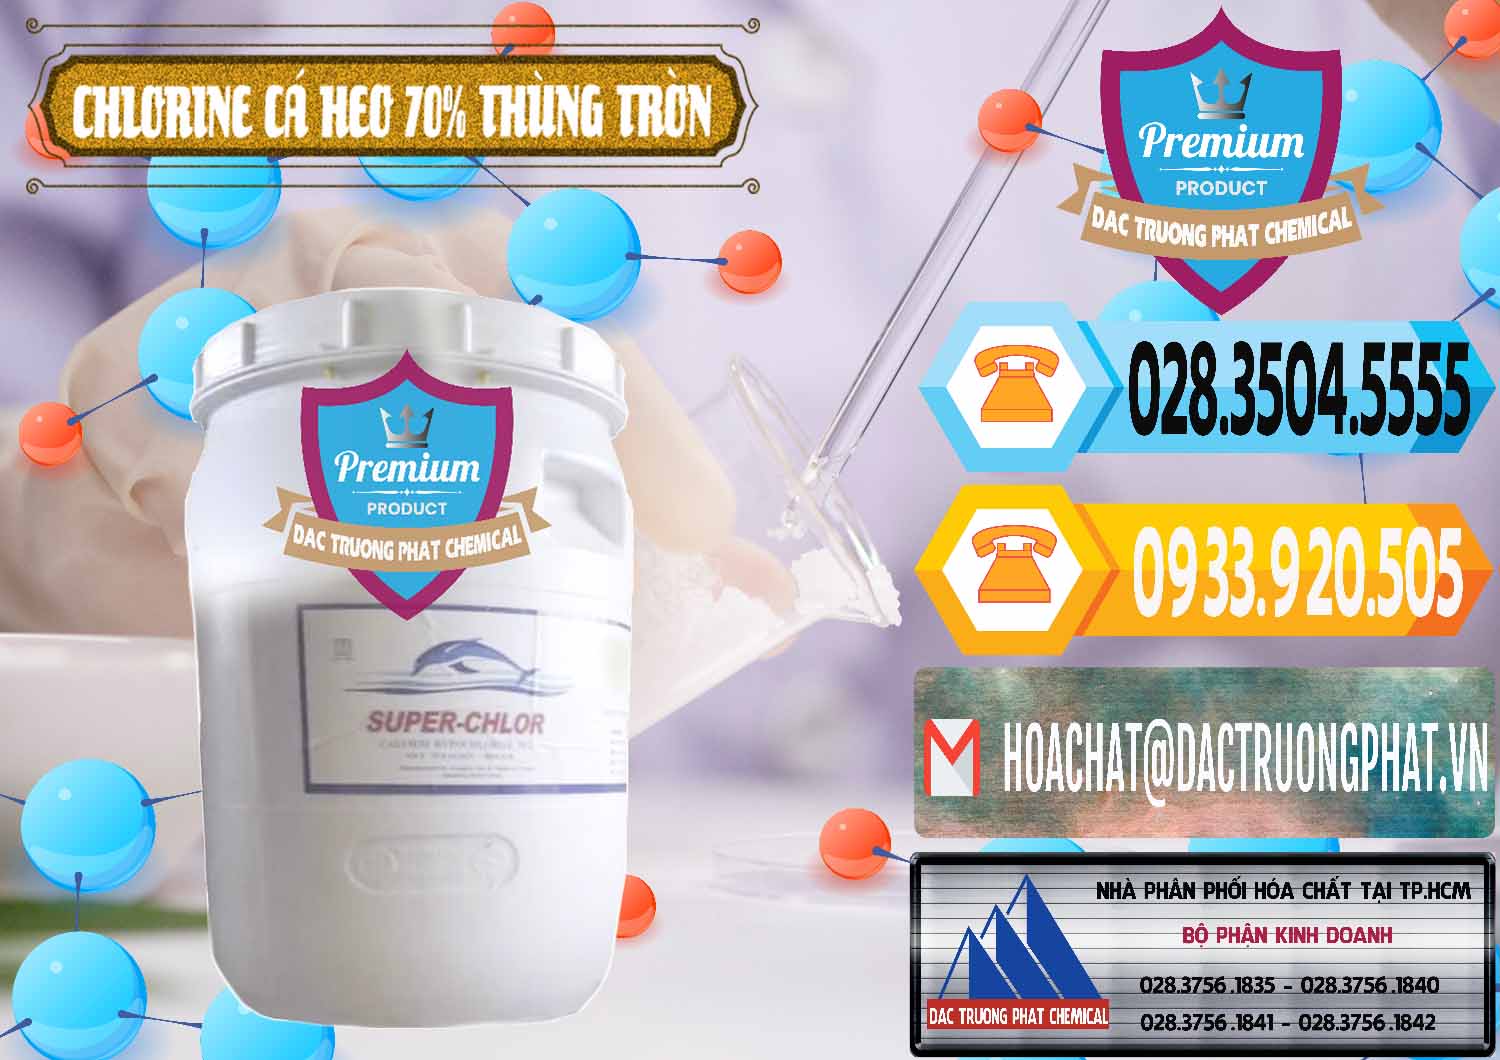 Chuyên bán ( phân phối ) Clorin - Chlorine Cá Heo 70% Super Chlor Thùng Tròn Nắp Trắng Trung Quốc China - 0239 - Đơn vị chuyên bán - phân phối hóa chất tại TP.HCM - hoachattayrua.net